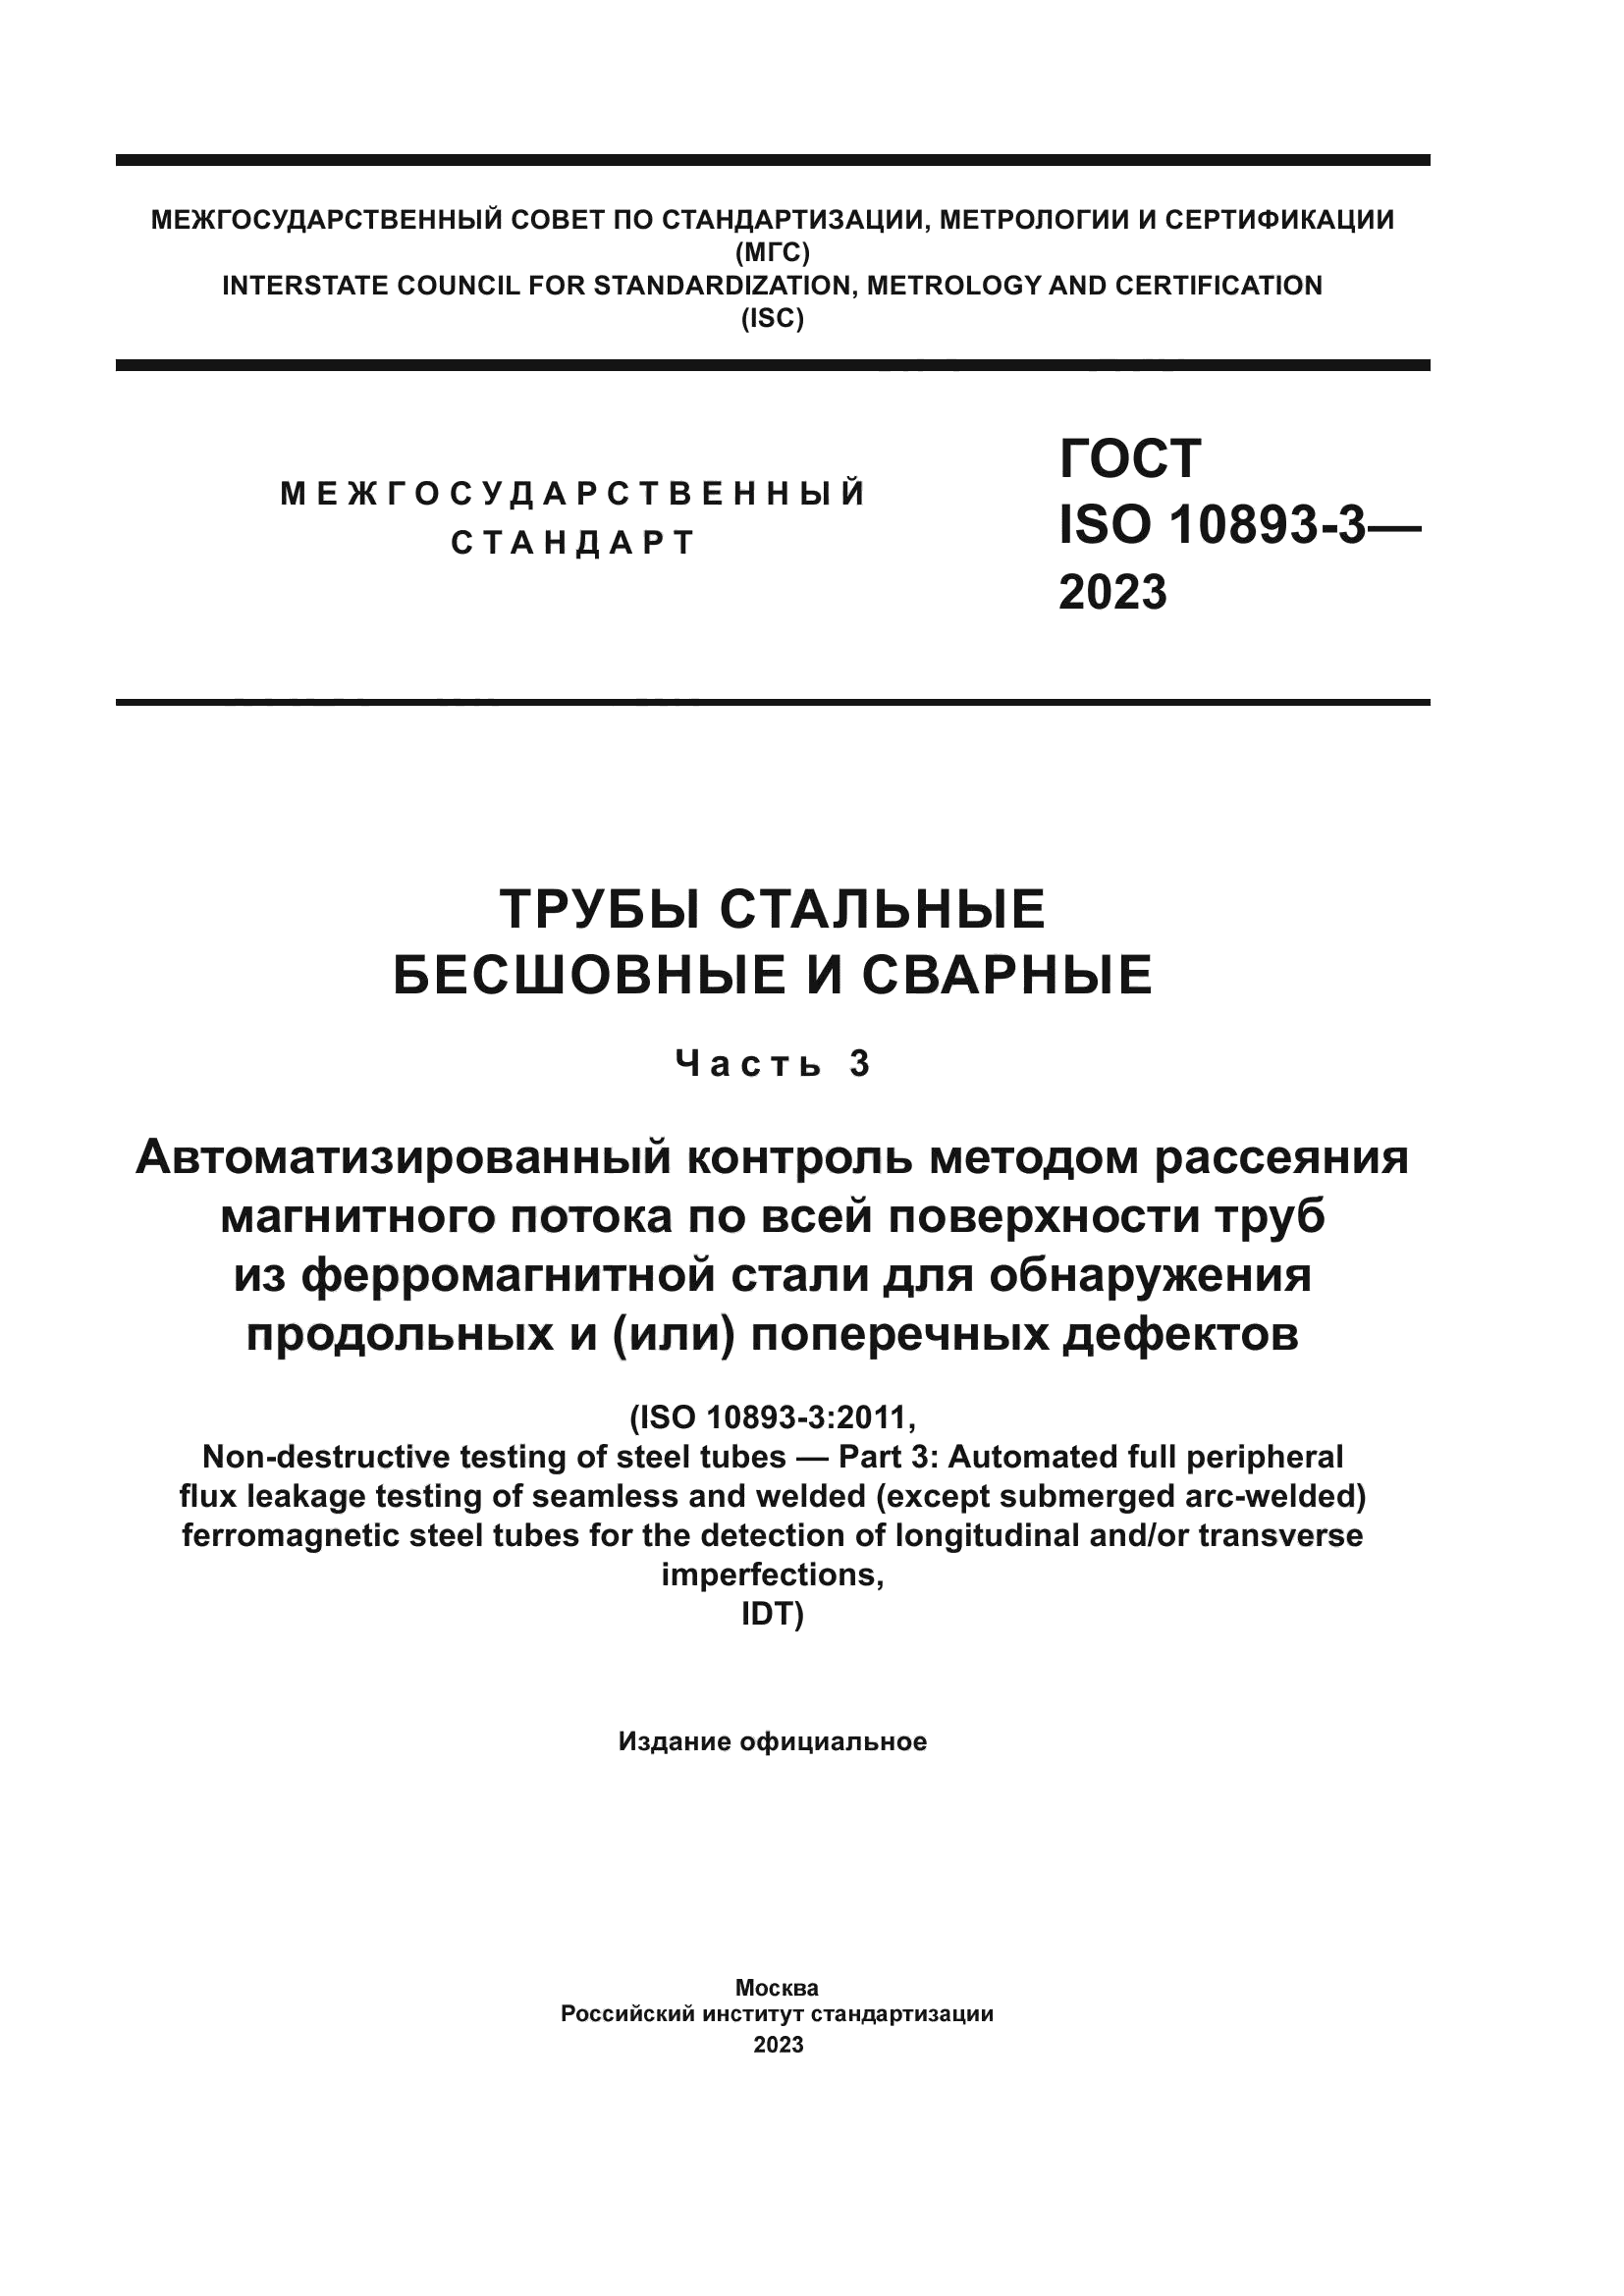 ГОСТ ISO 10893-3-2023